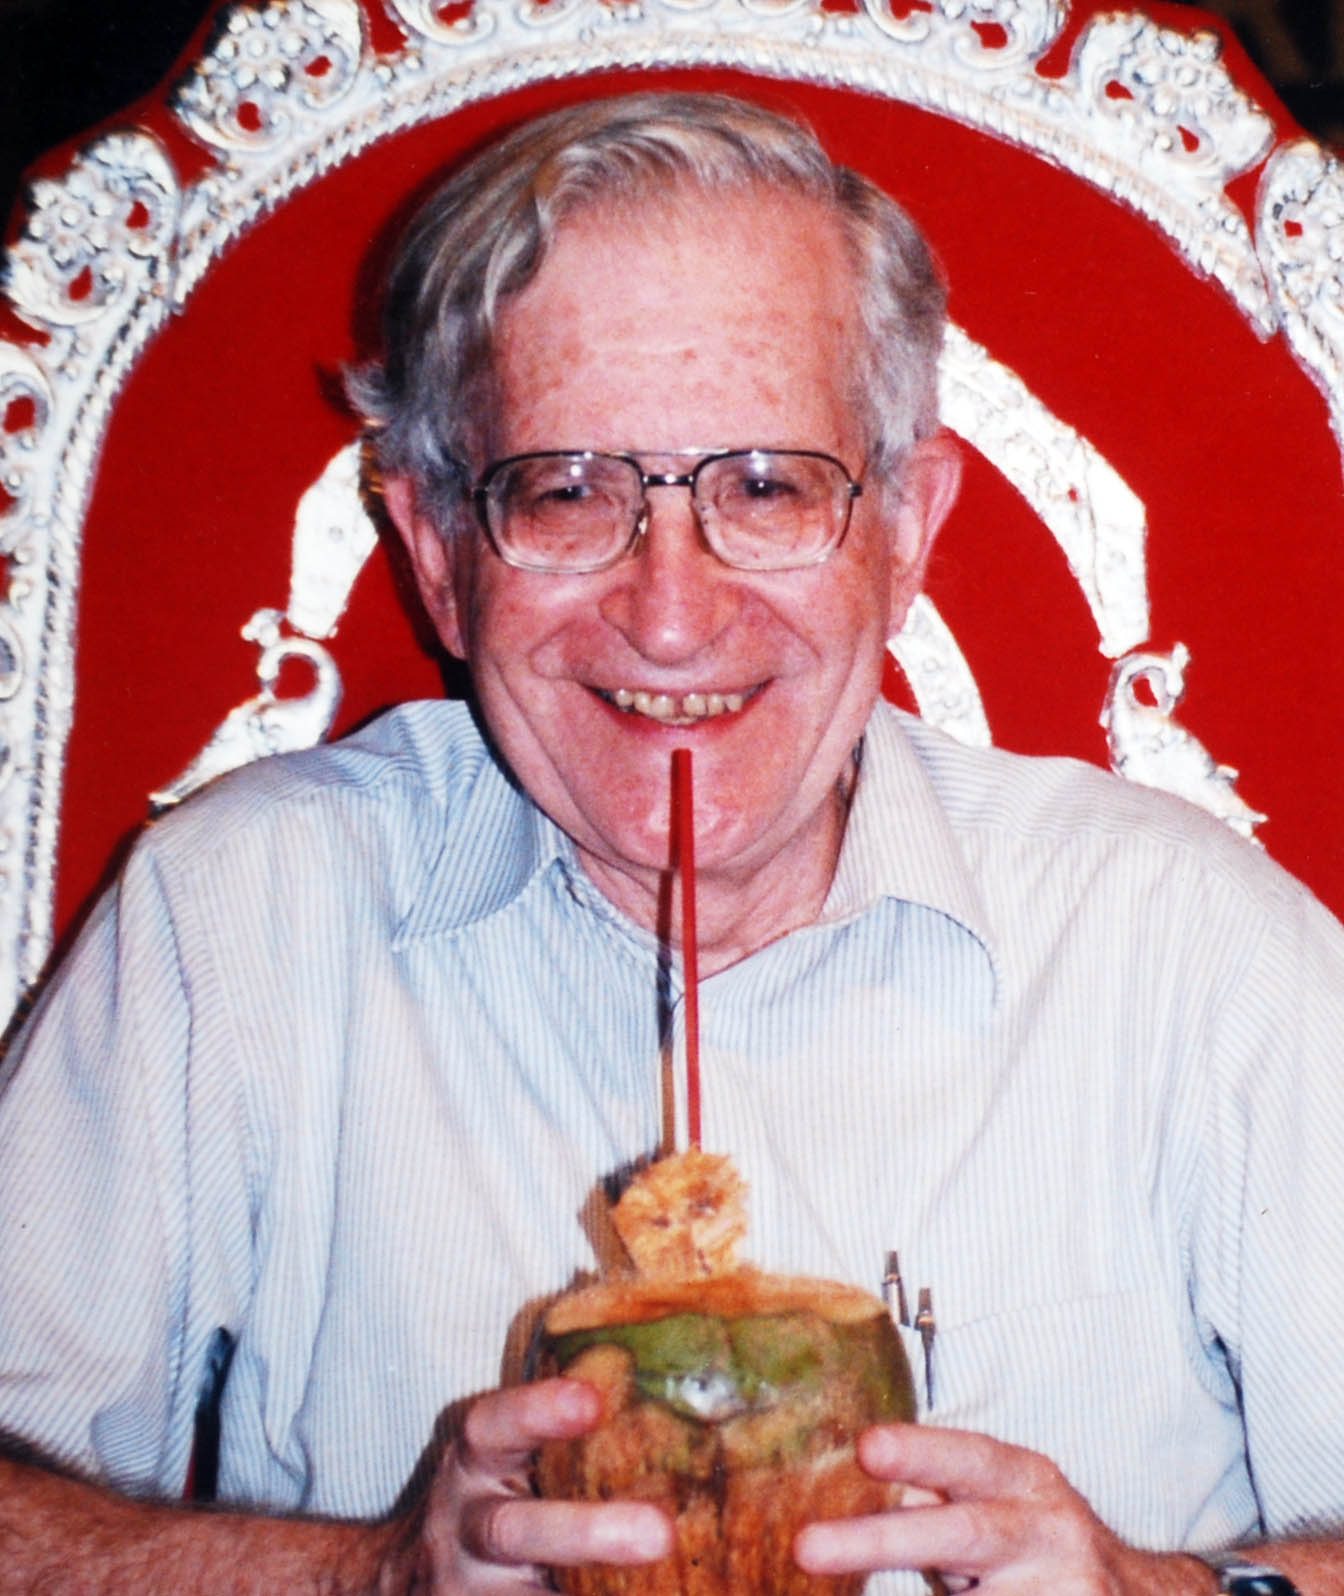 Chomsky's